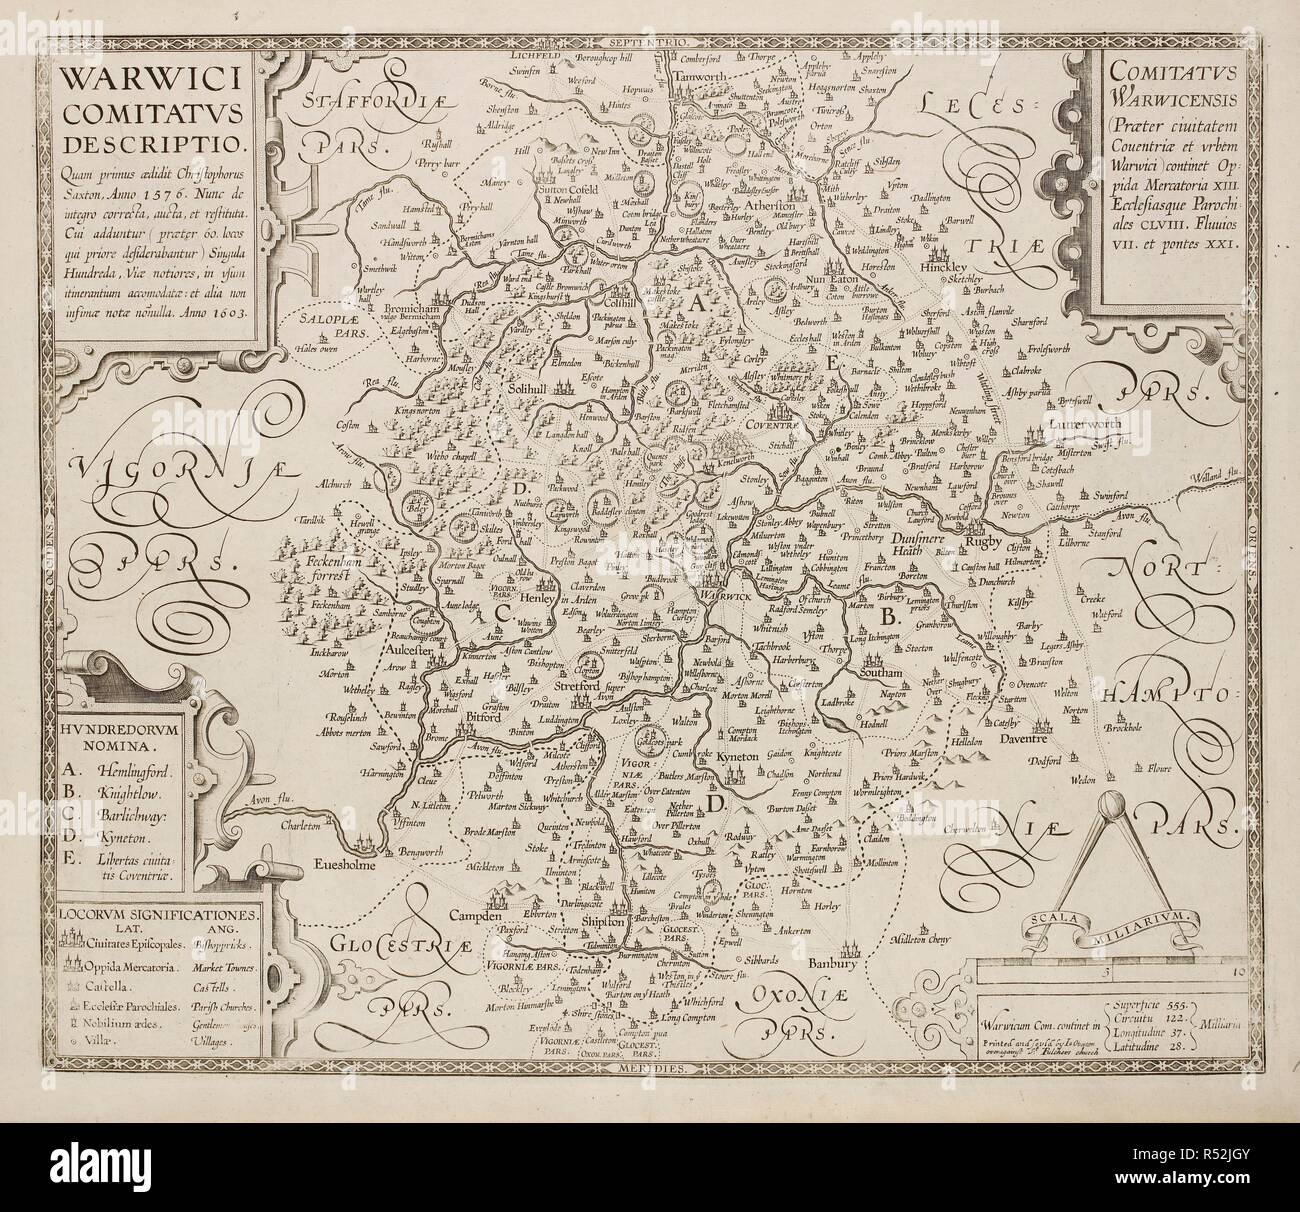 Mapa de Warwici Comitatvs o Warwickshire, y Warwick. . Una colección de 37 mapas de los condados de Inglaterra. Londres. H. Overton, 1714. Una colección de 37 mapas de los condados de Inglaterra, siendo las reimpresiones, de J. Speedâ€™s mapas, por Henry Overton, junto con los de P. Stent Reimpreso por John Overton, y mapas de Derbyshire y Yorkshire grabado por S. Nicholls. Fuente: Maps.145.c.9 18. Lengua: el latín. Foto de stock